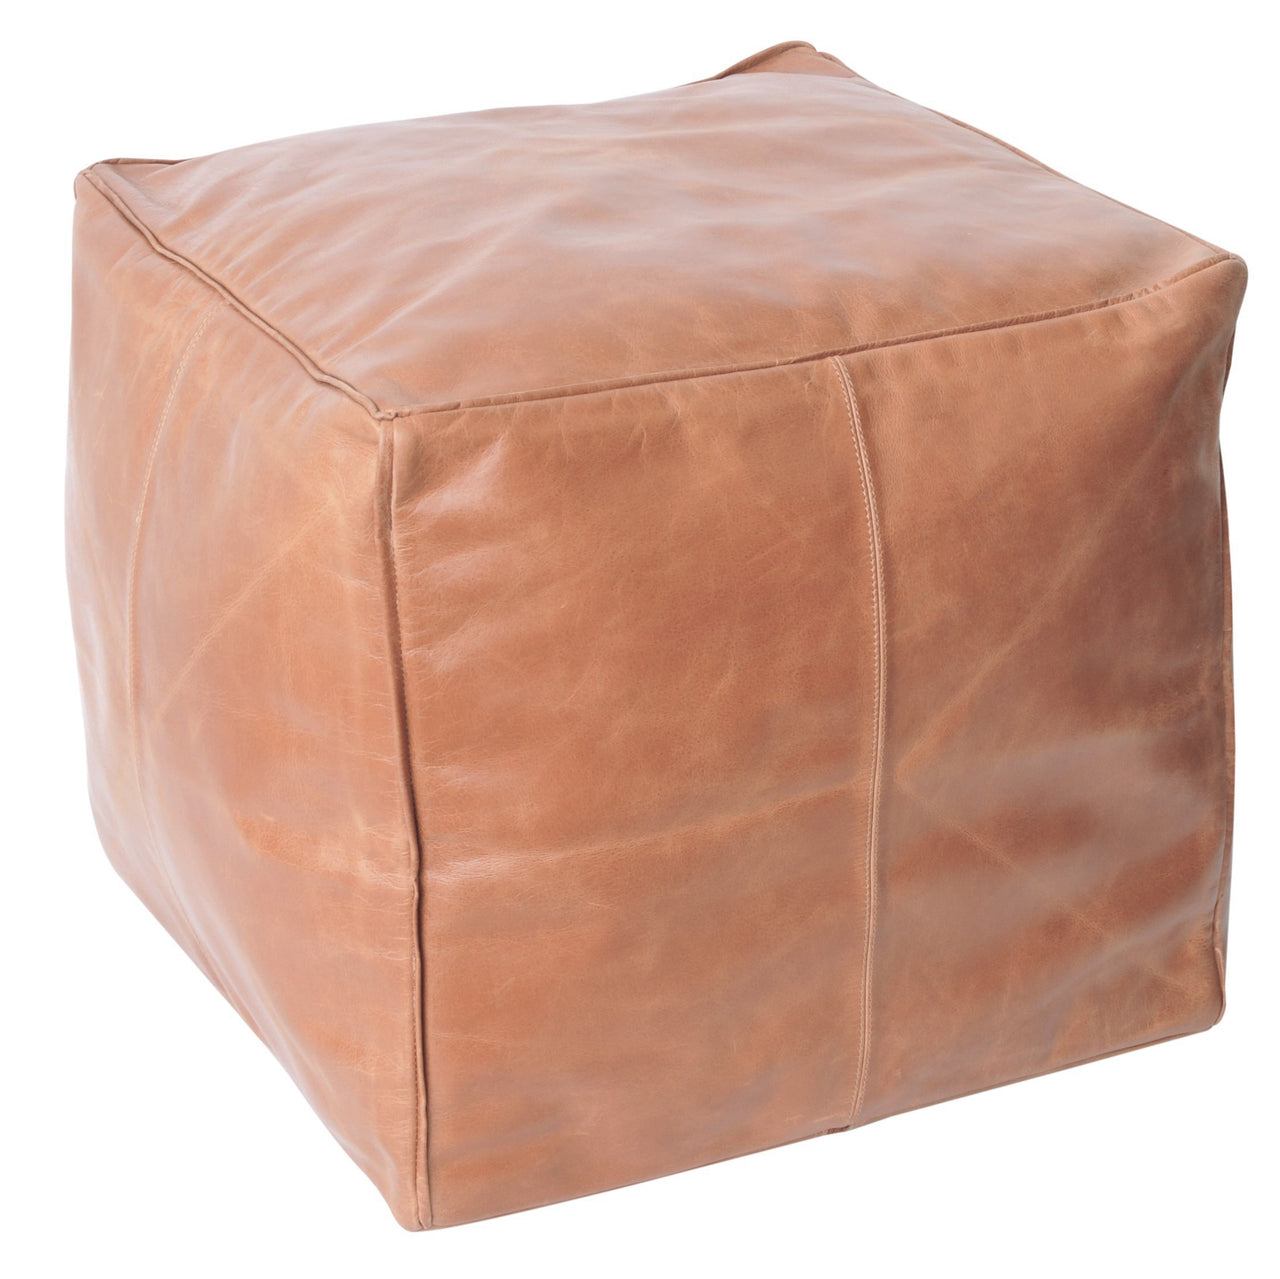 leather-tan-ottoman-pouf-footstool-seatribe-australia